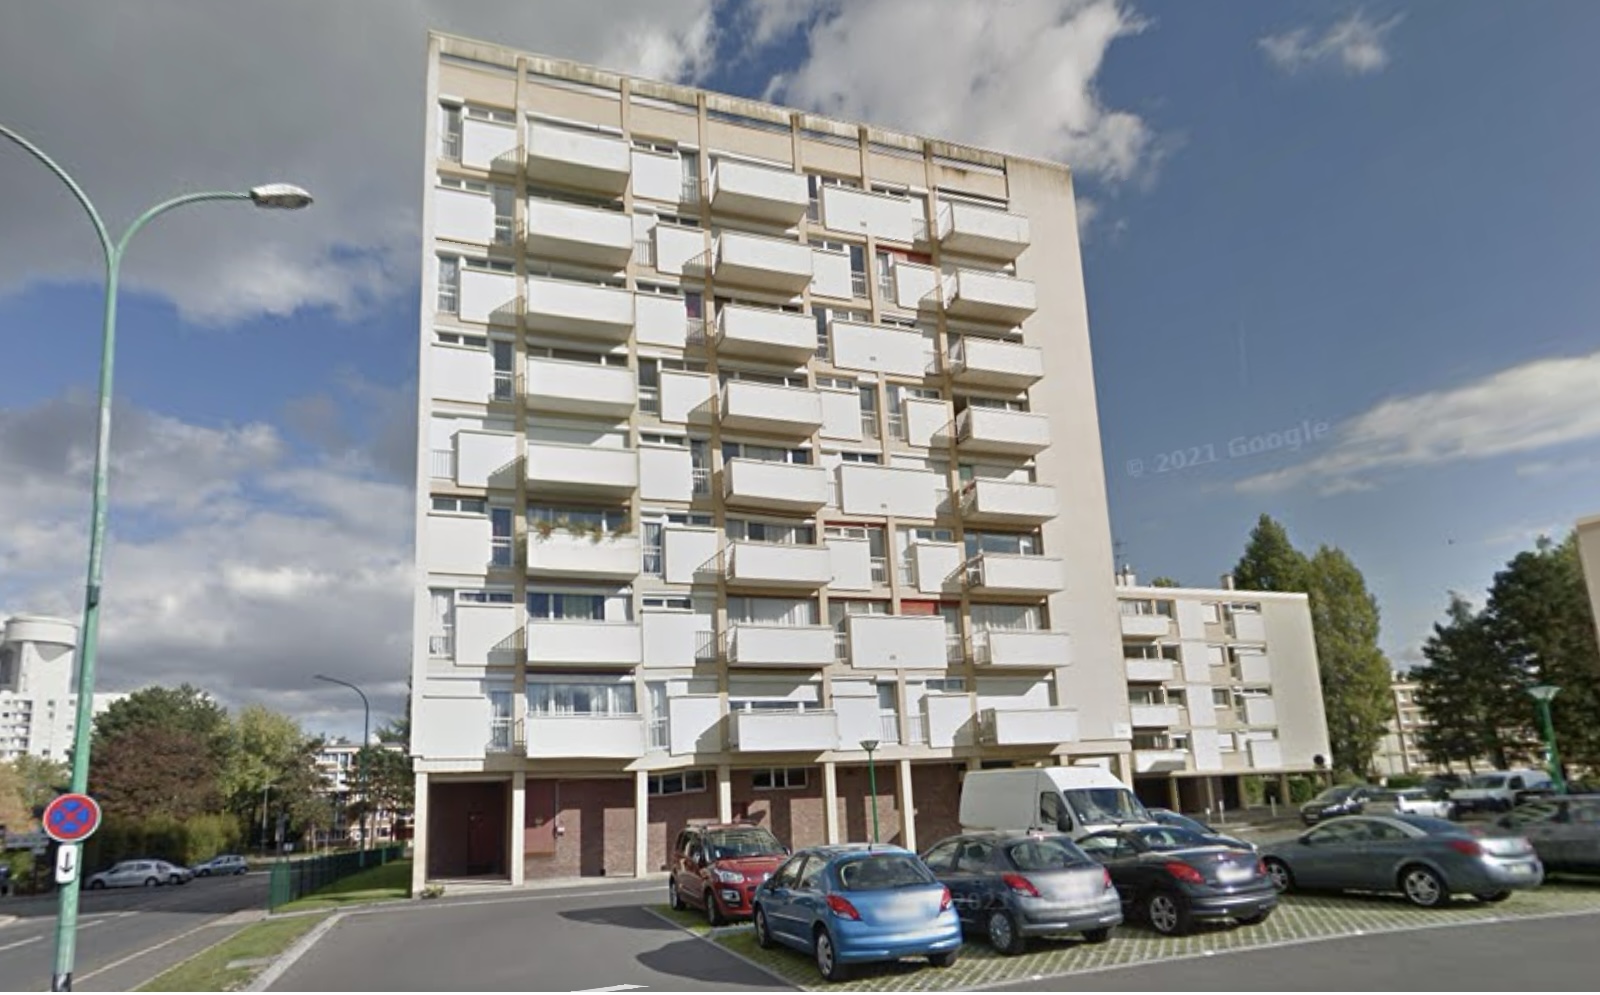 Le jeune homme a chuté dans le vide d’un balcon situé au quatrième étage - illustration @ Google Maps